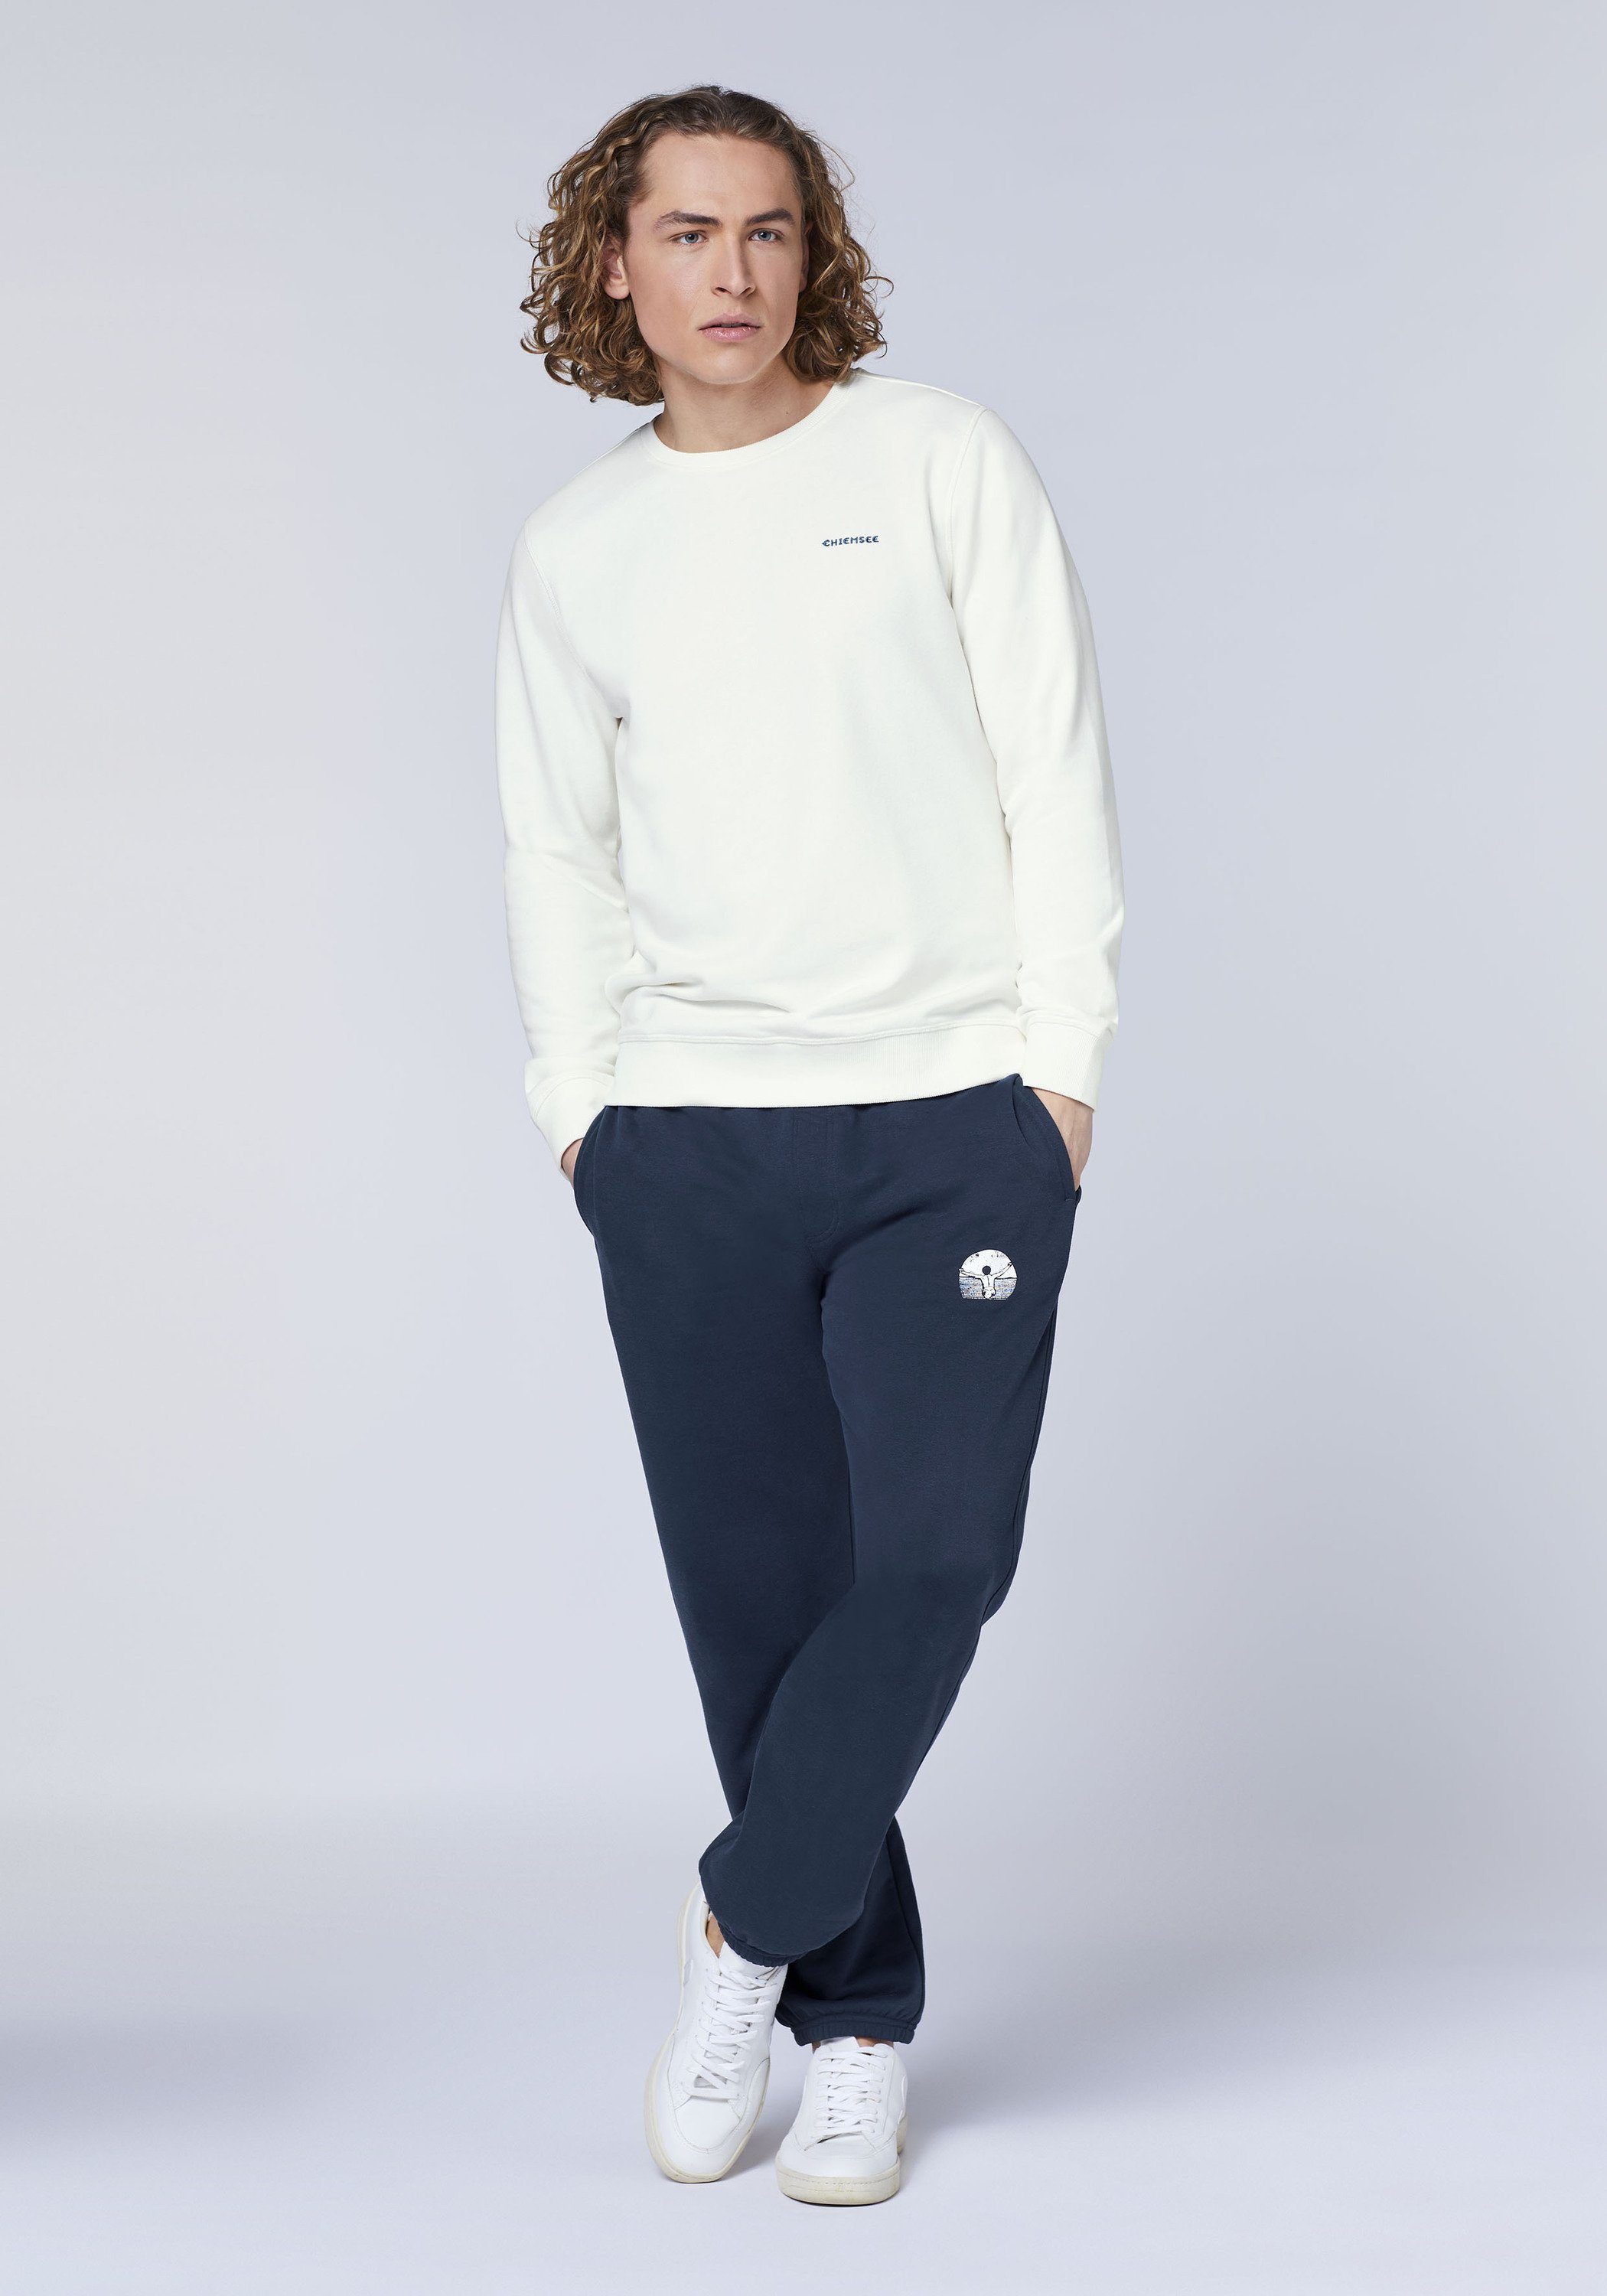 Sweatshirt mit Star 11-4202 1 Chiemsee Jumper-Motiv Sweater White